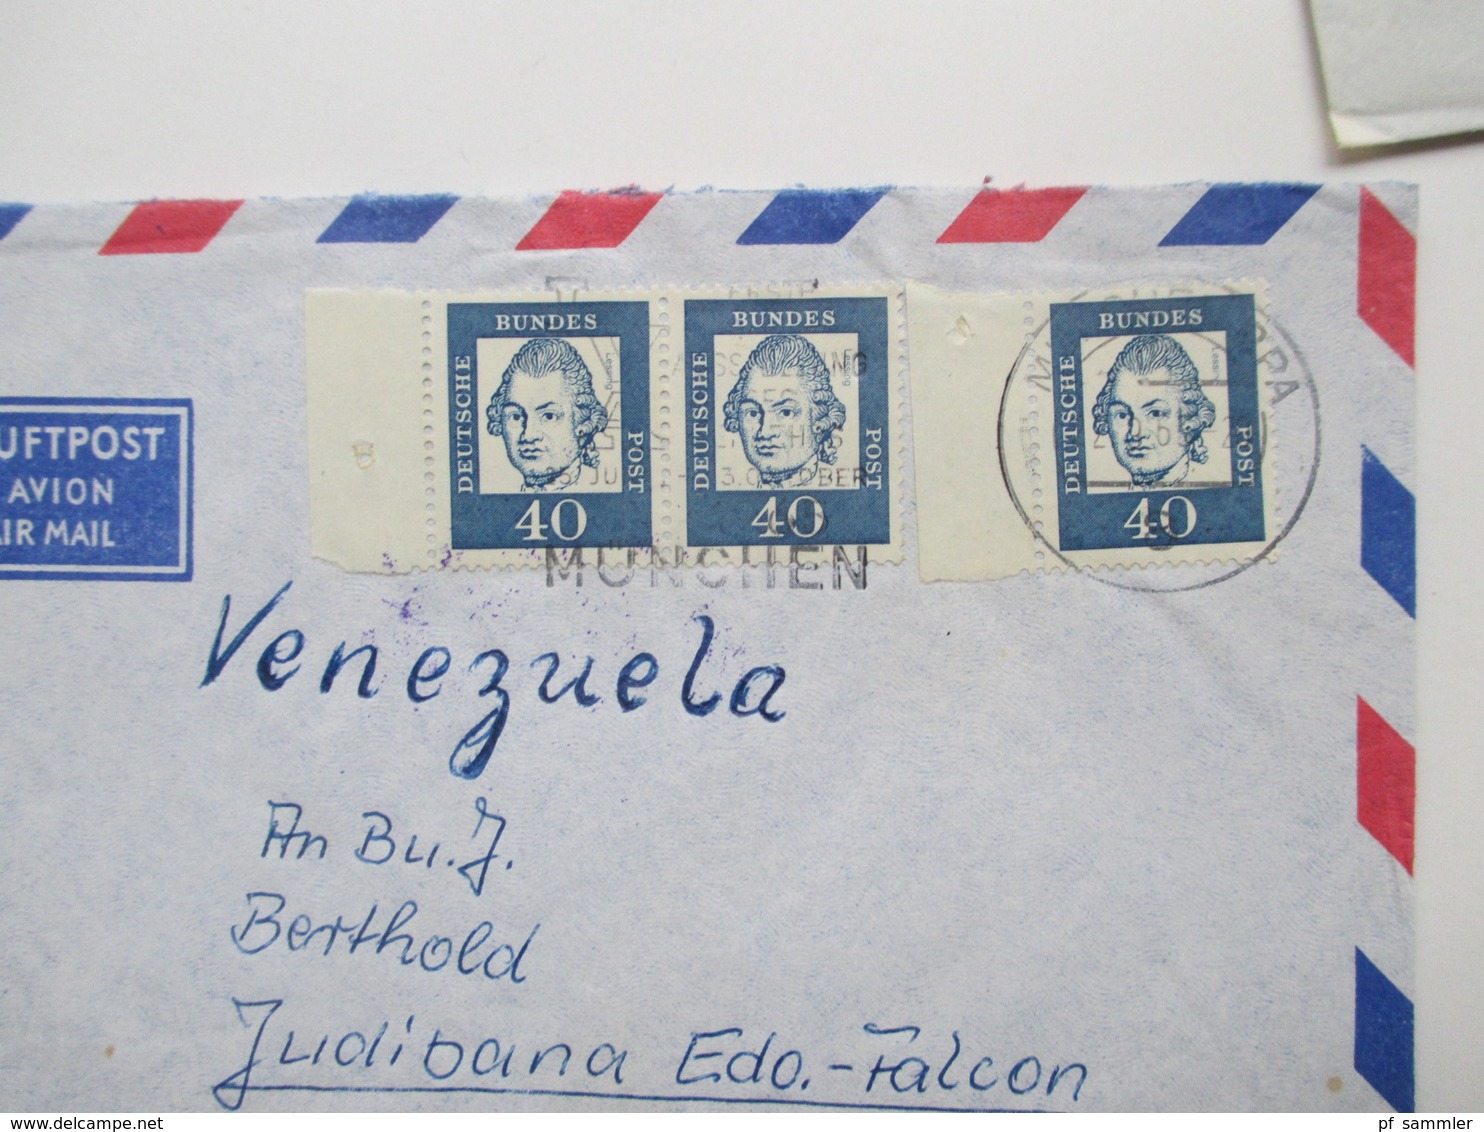 Belegeposten BRD / Berlin 1960er - 80er Jahre alles Übersee Luftpost! fast nur nach Venezuela! Insgesamt 500 Briefe!